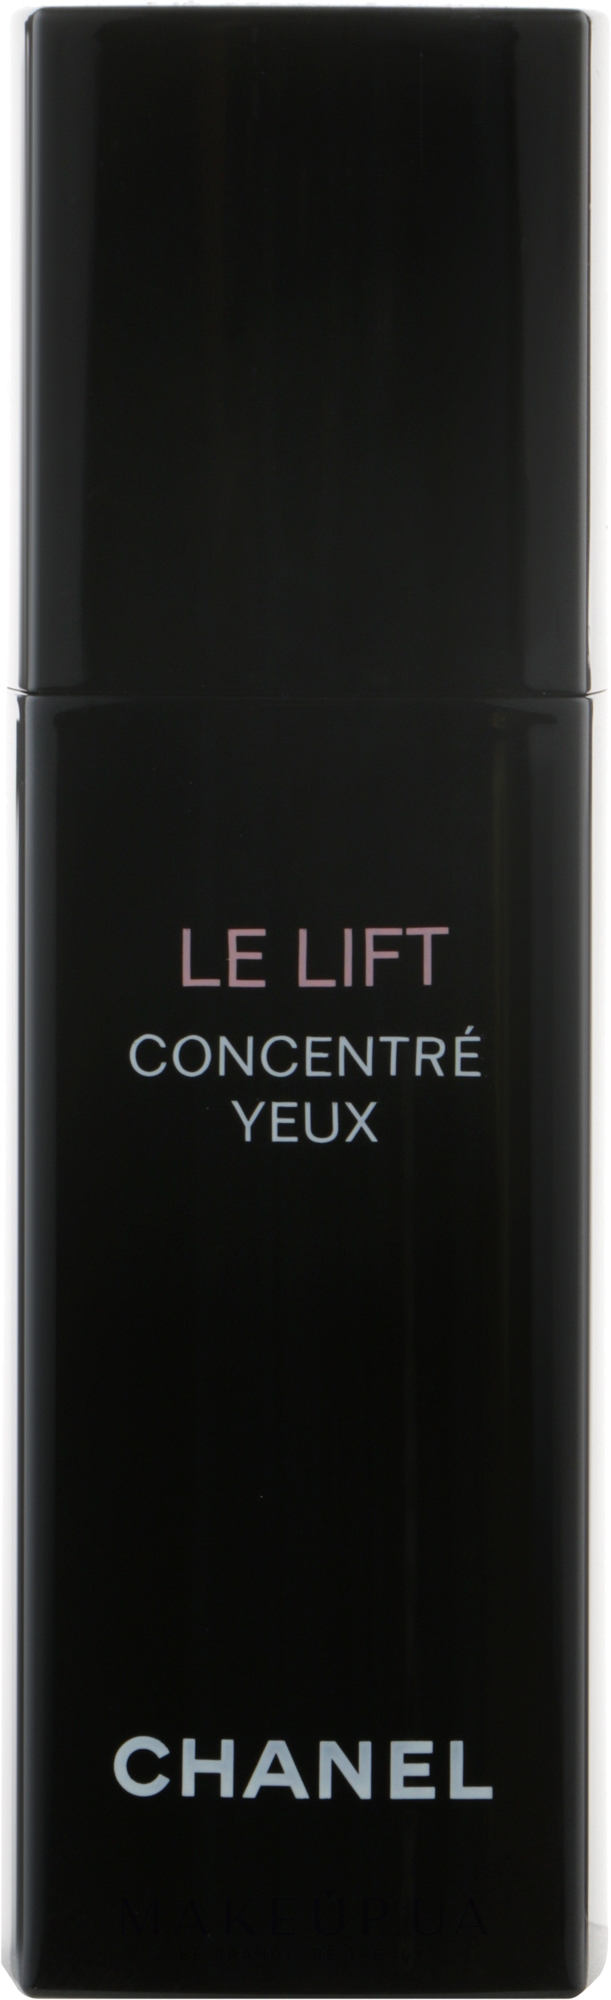 Chanel Le Lift Concentré Yeux ingredients (Explained)